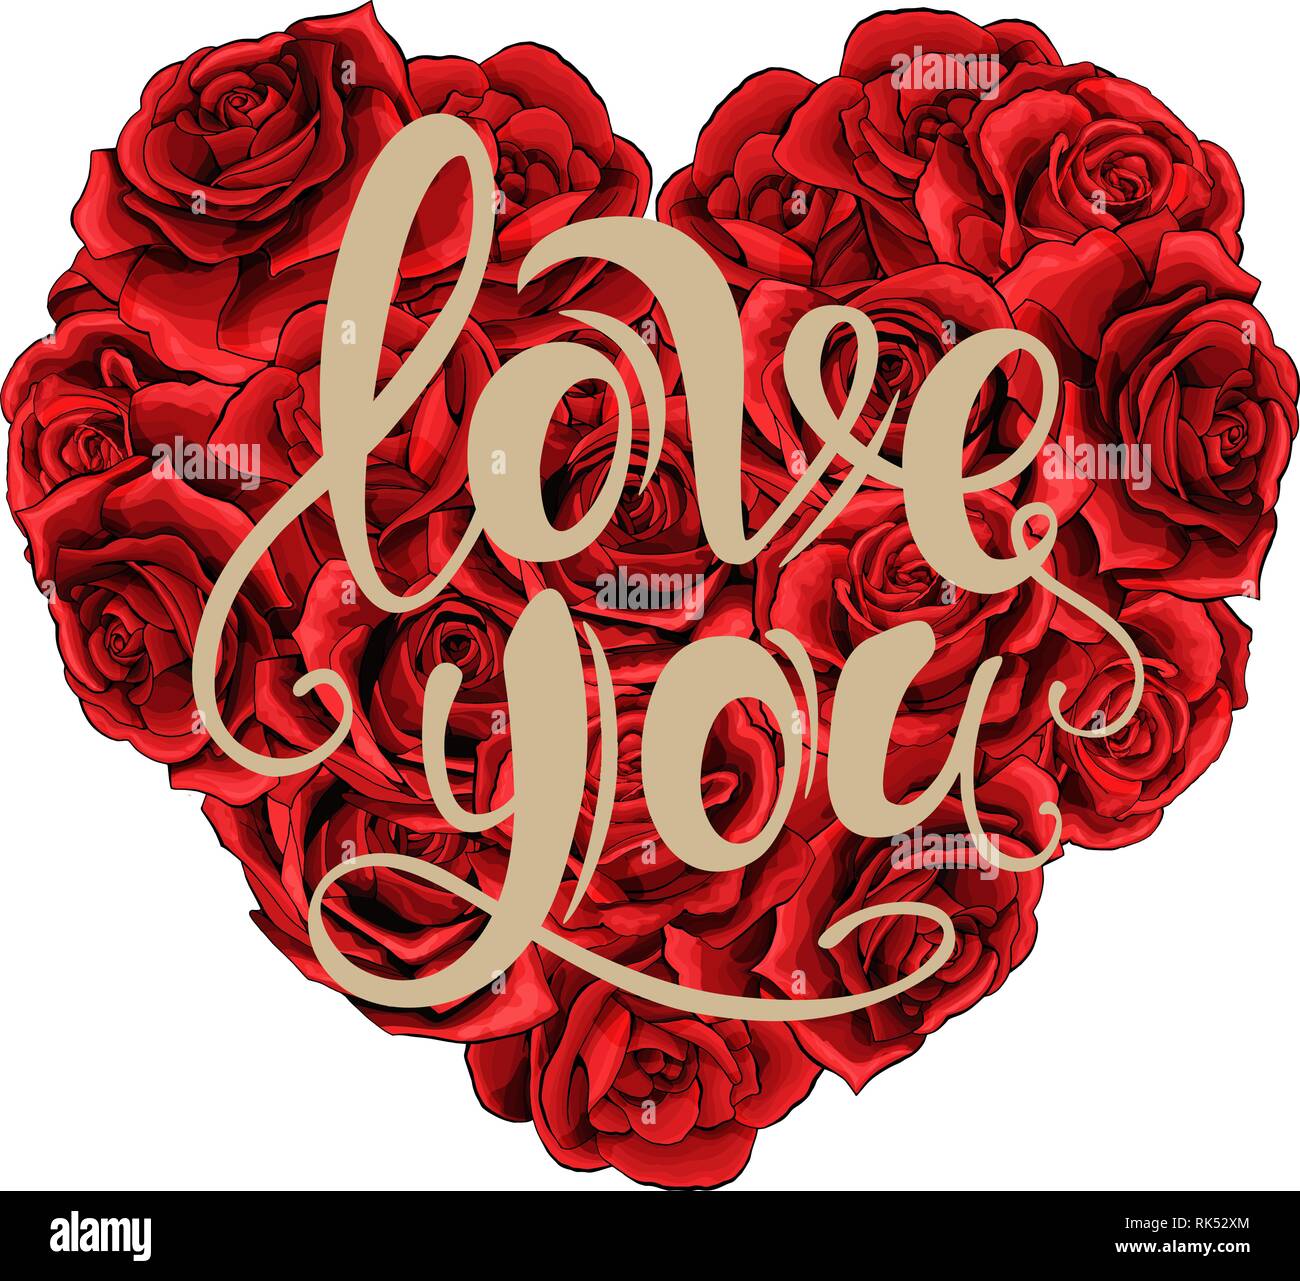 Valentines Tag rote Rosen Herzen gefüllt und Beschriftung auf weißem  Hintergrund Stock-Vektorgrafik - Alamy